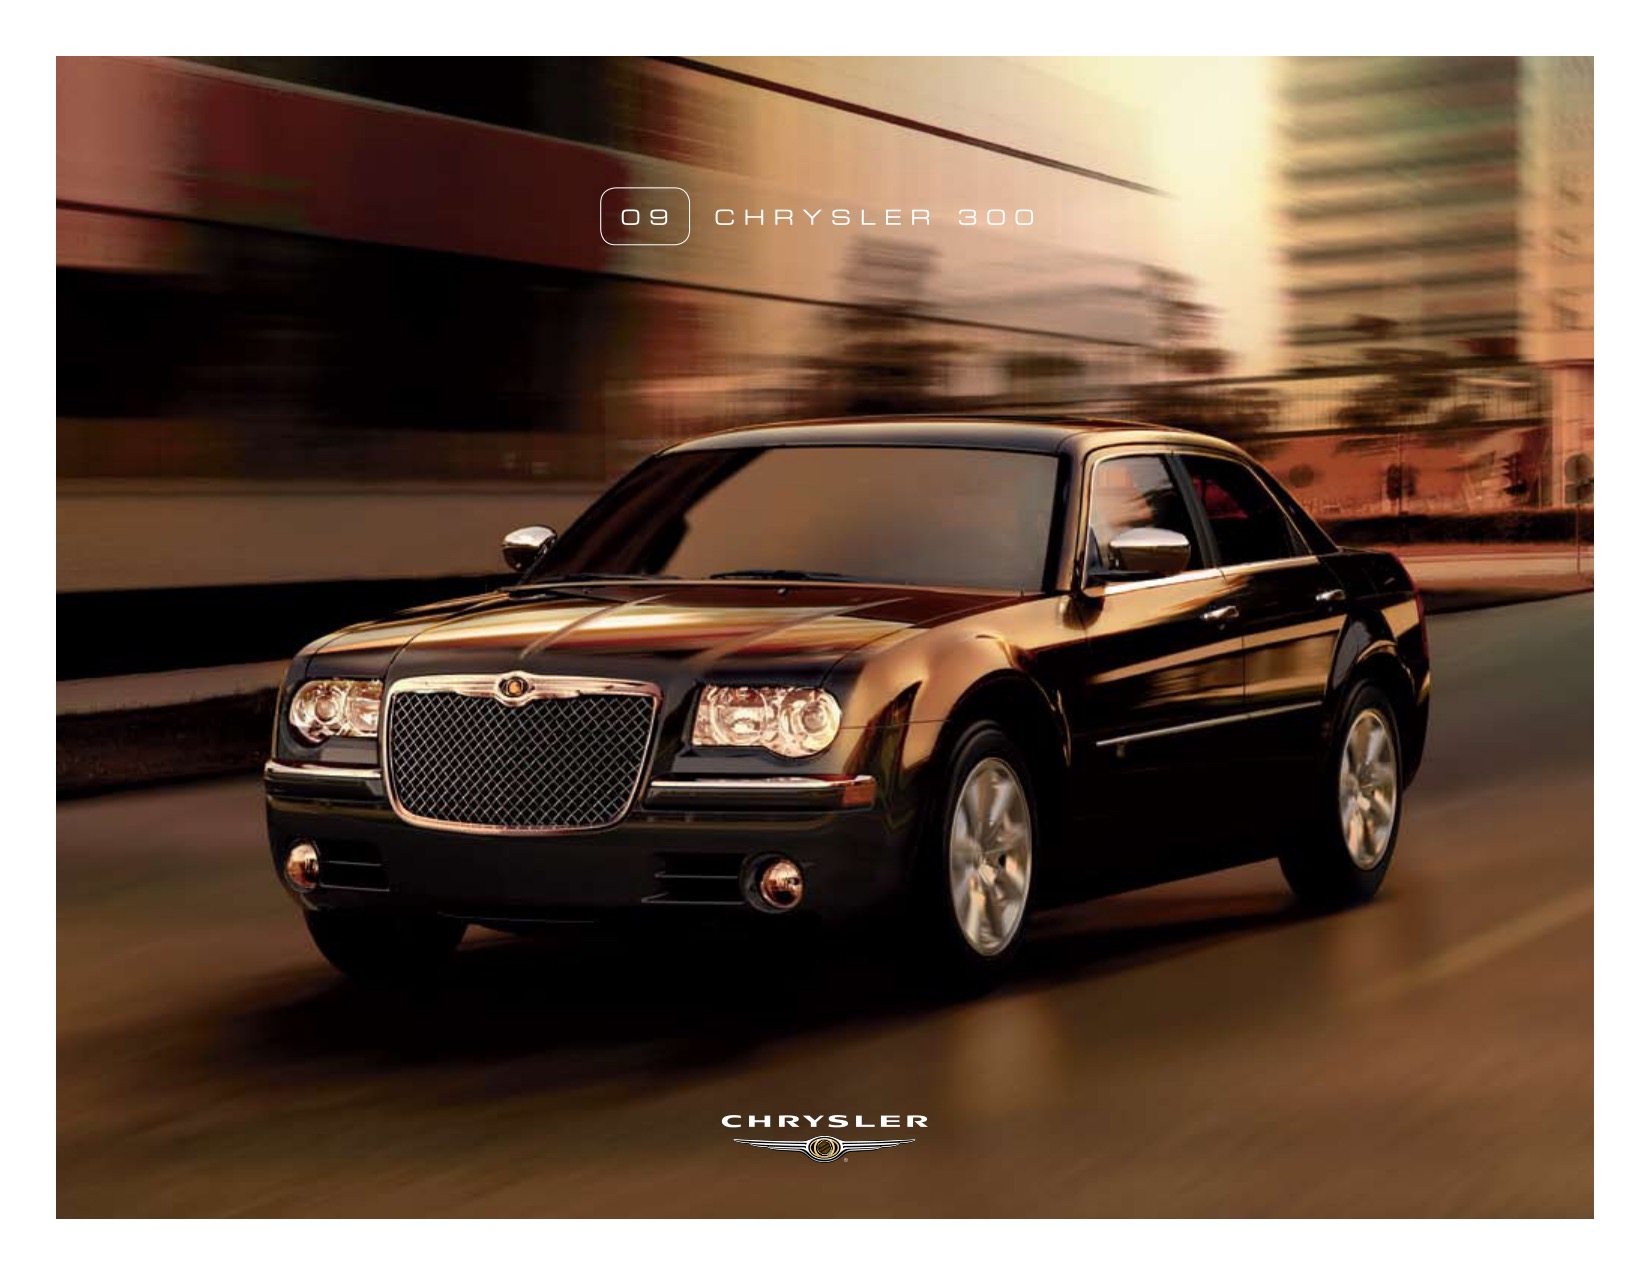 2009 Chrysler 300 Brochure